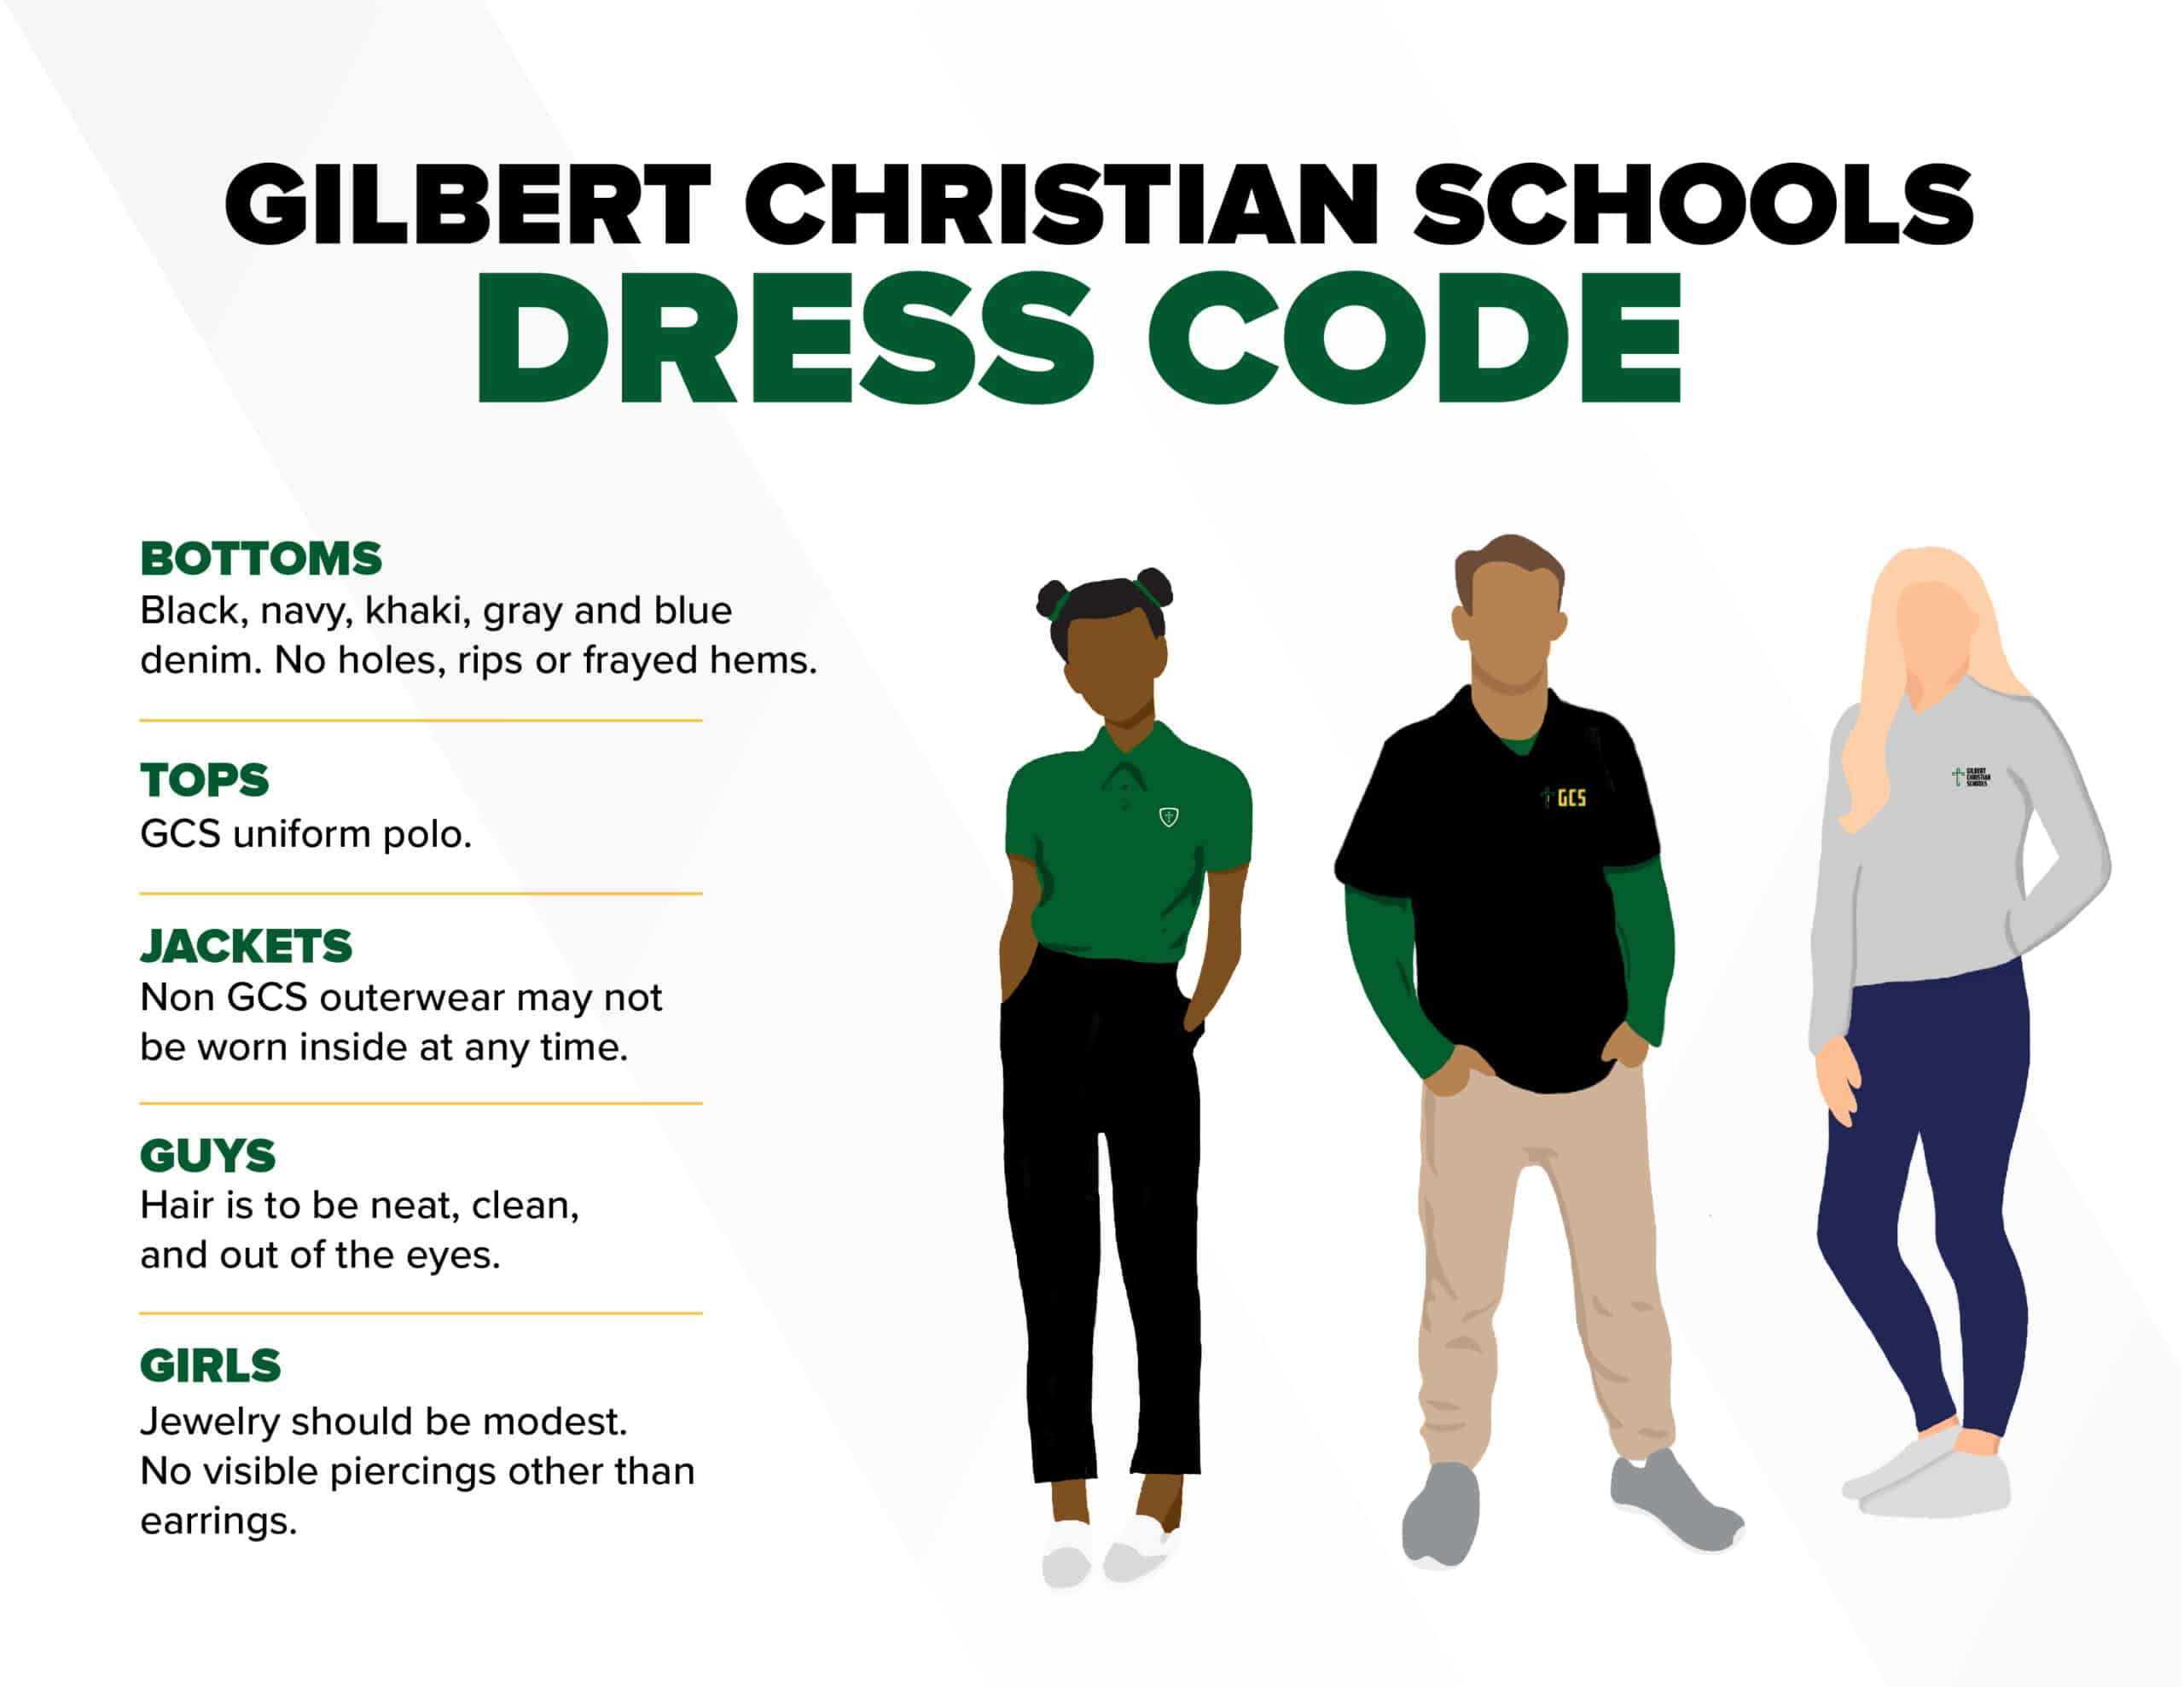 Dress codes: Where should schools set limits?